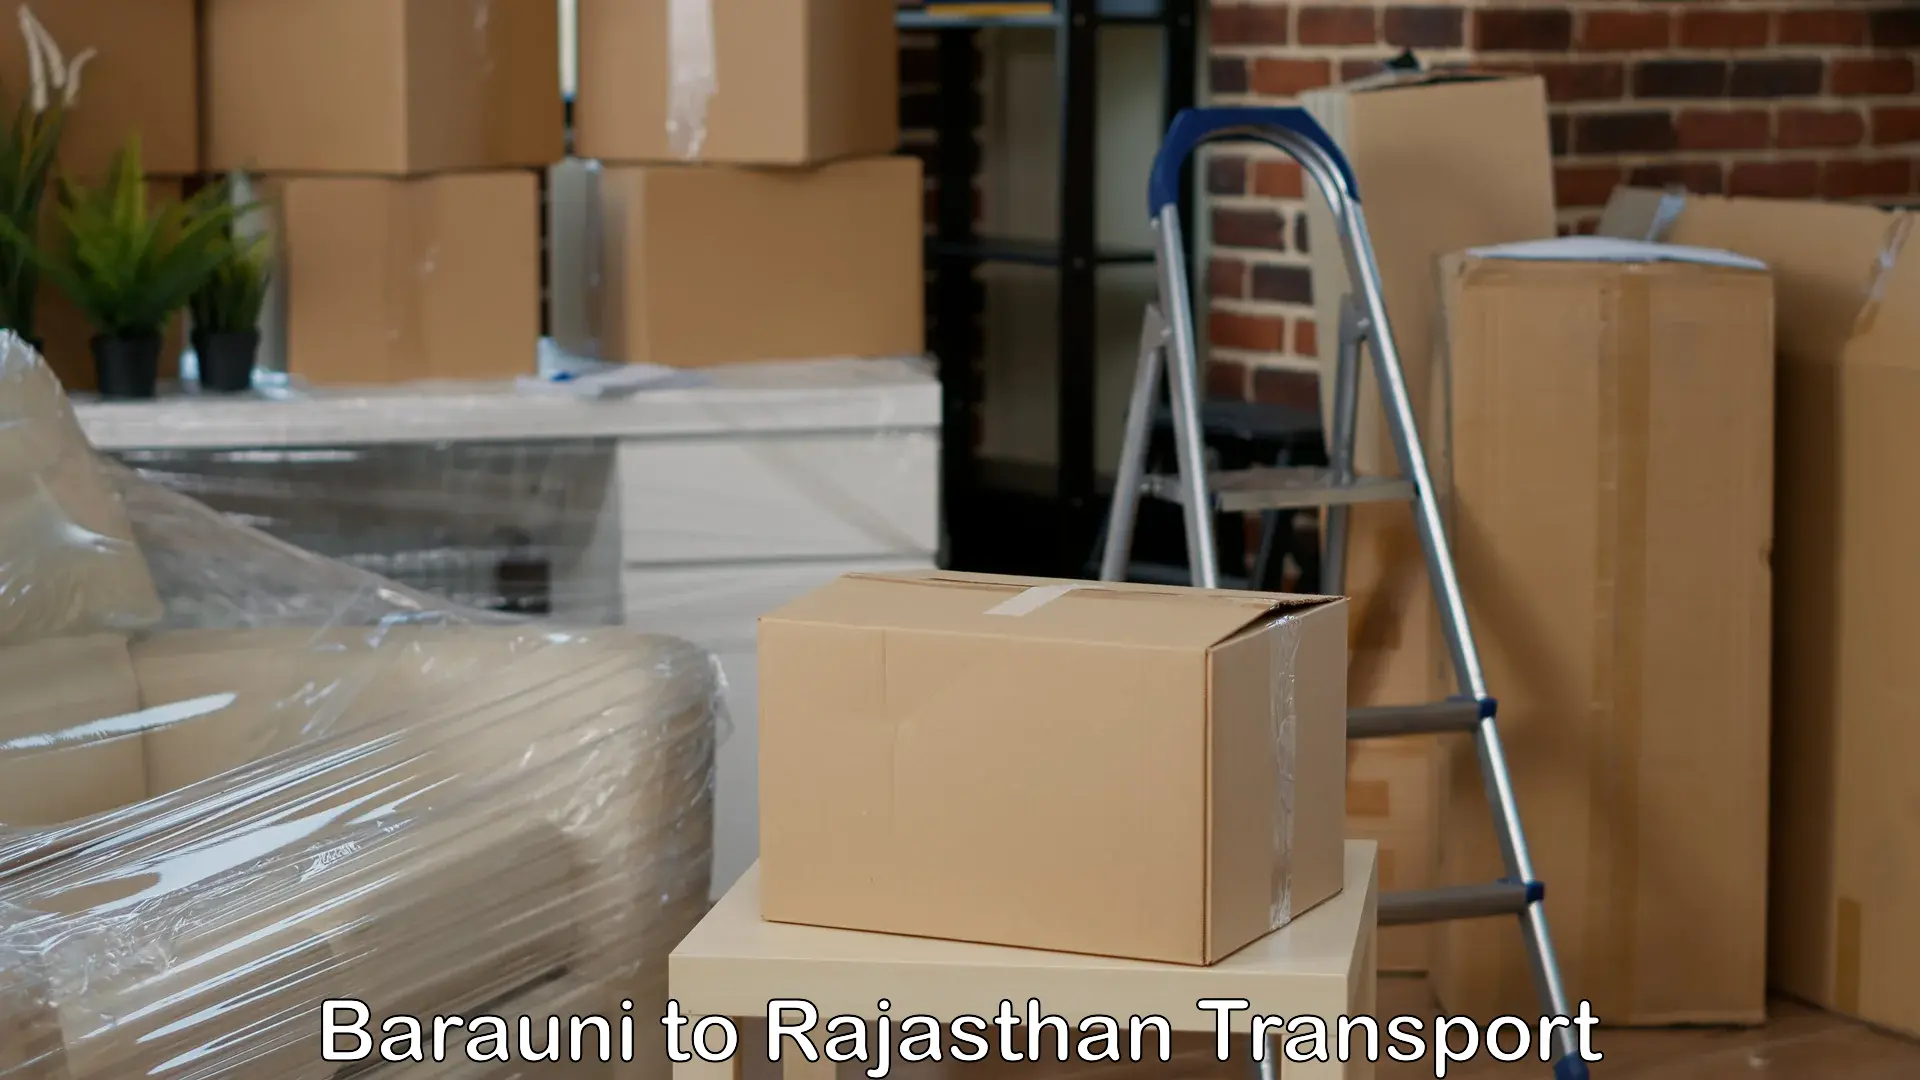 Daily parcel service transport Barauni to Shahpura Jaipur